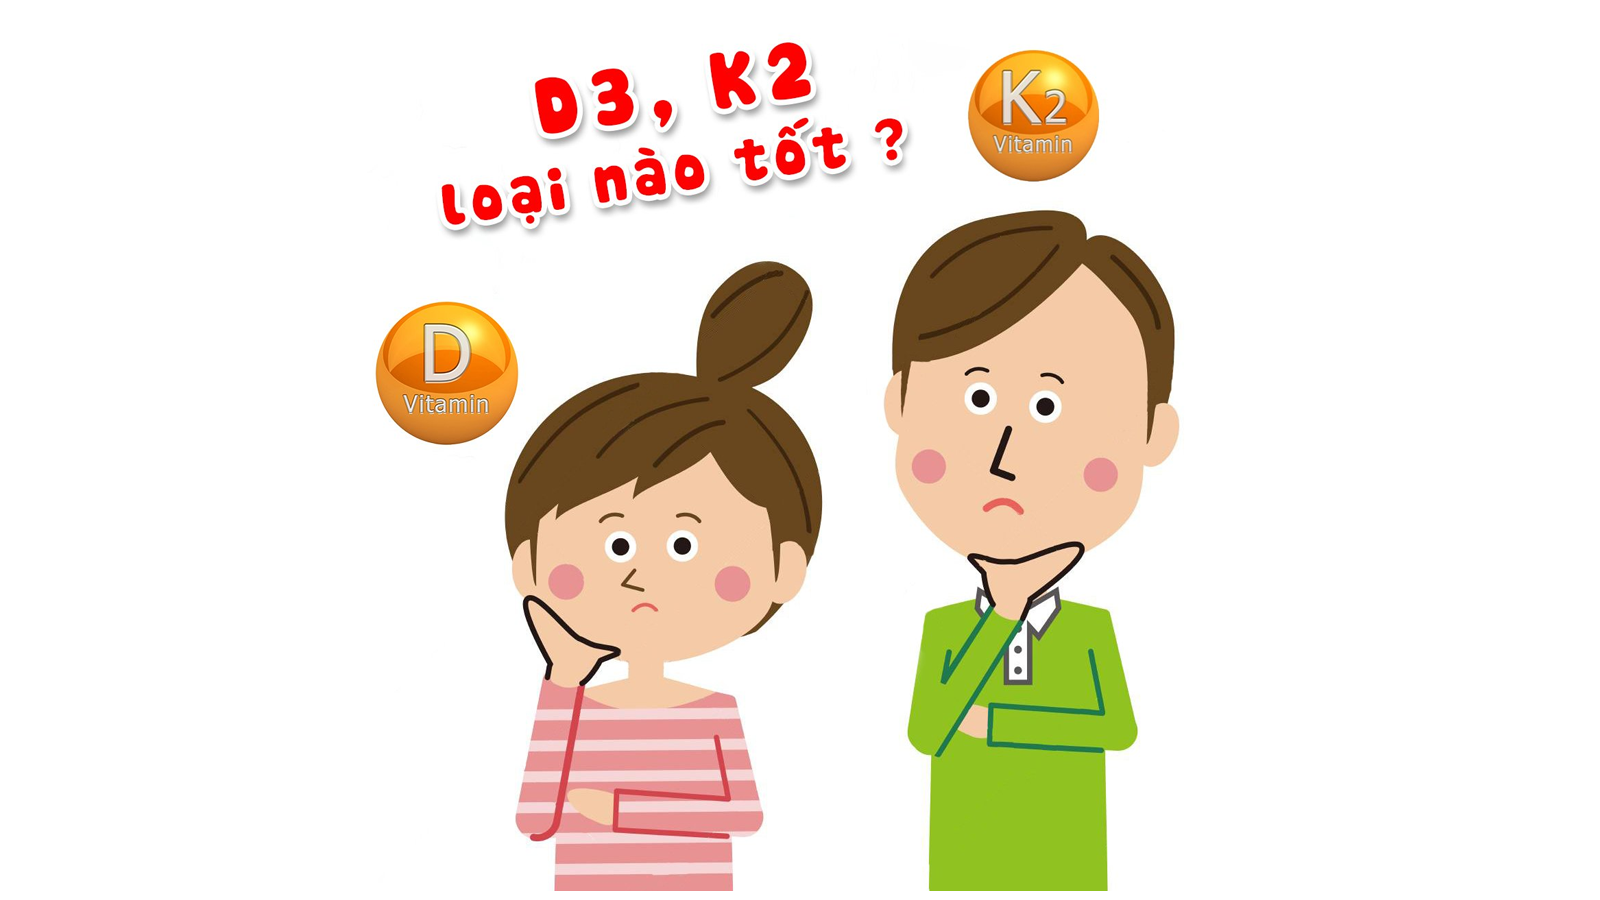 Phụ nữ mang thai và cho con bú có nên dùng thuốc vitamin D3 K2 MK7 không?